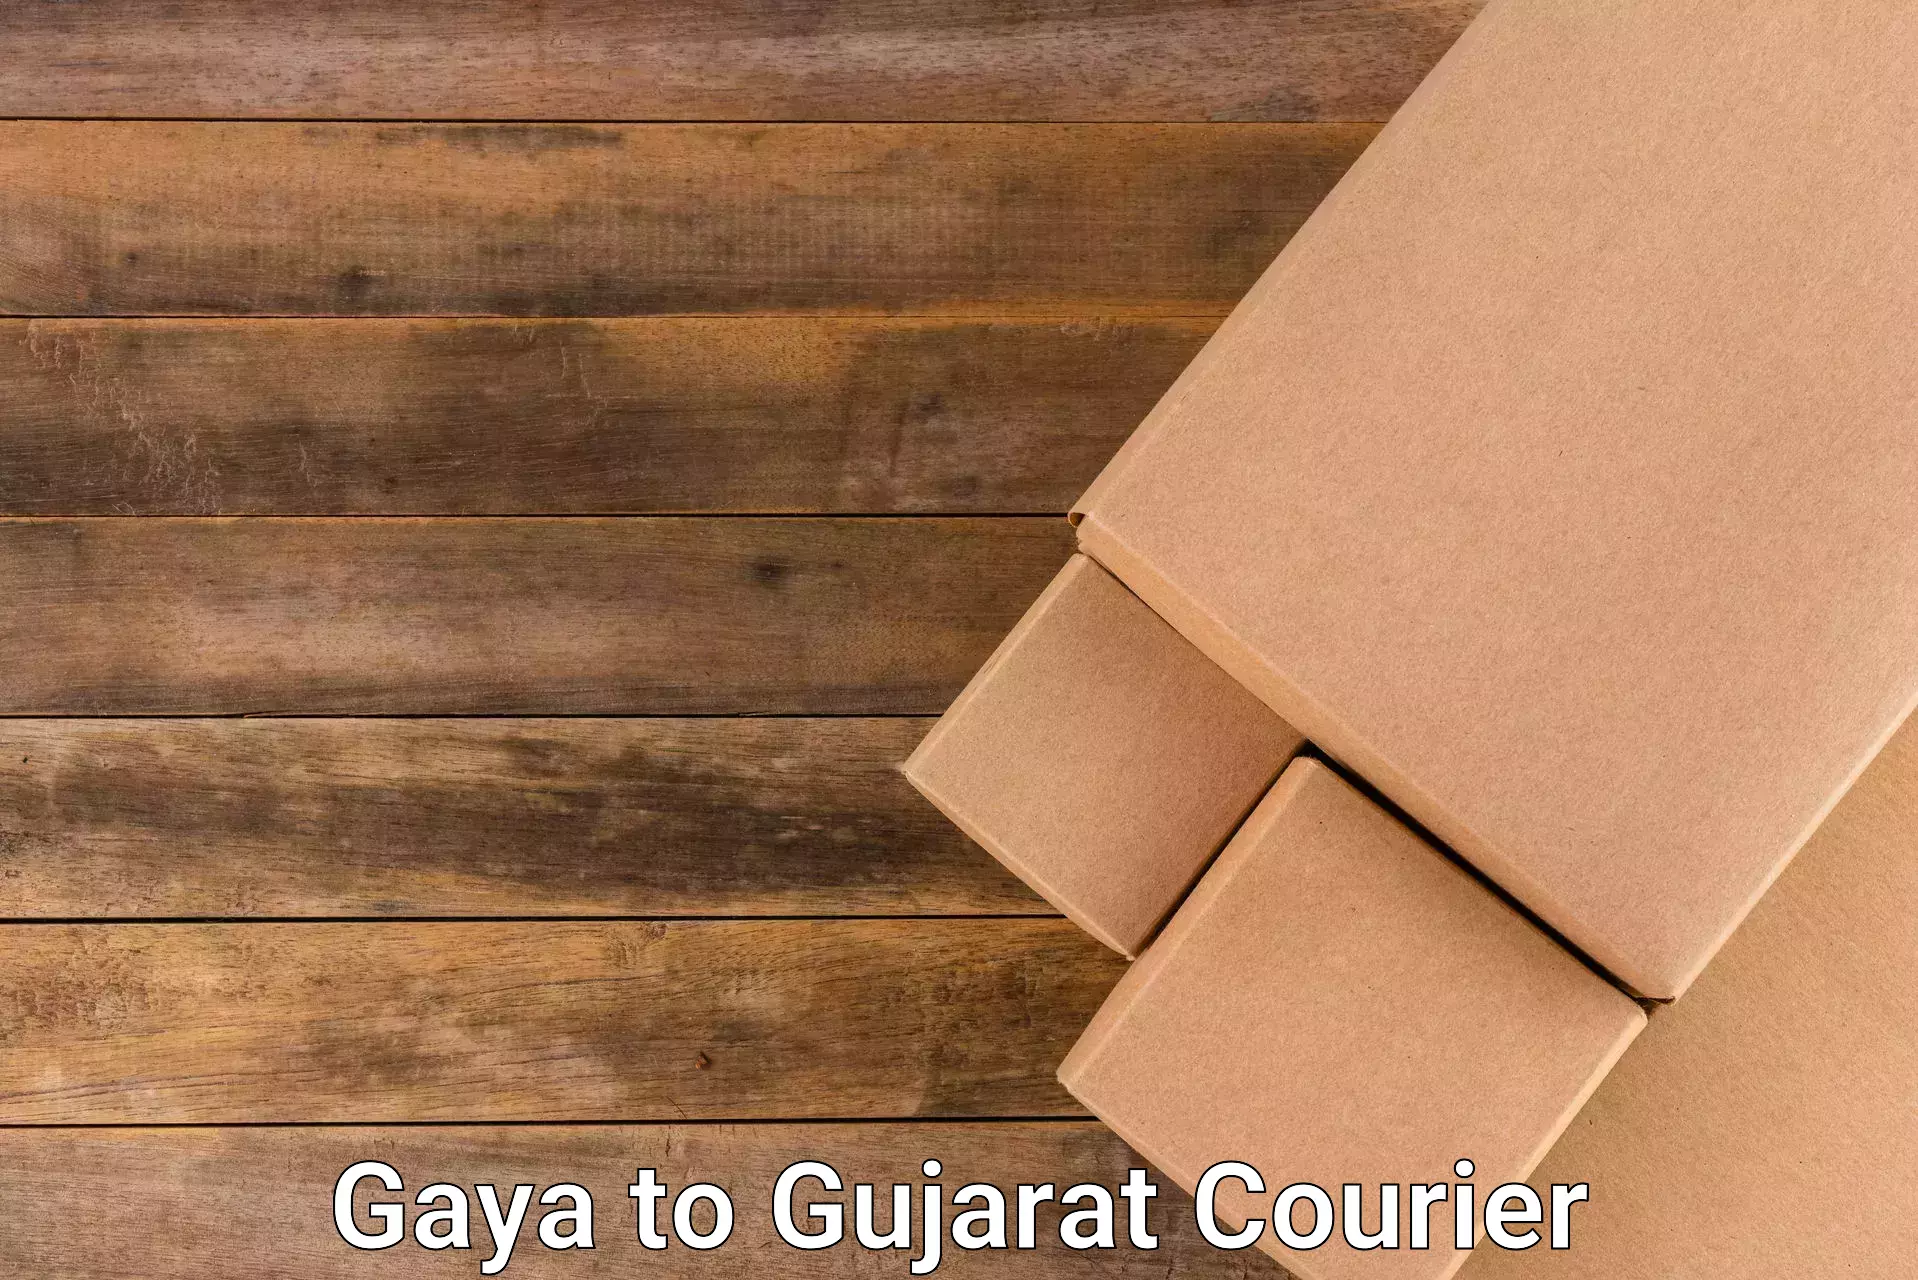 Express courier capabilities Gaya to Patan Gujarat